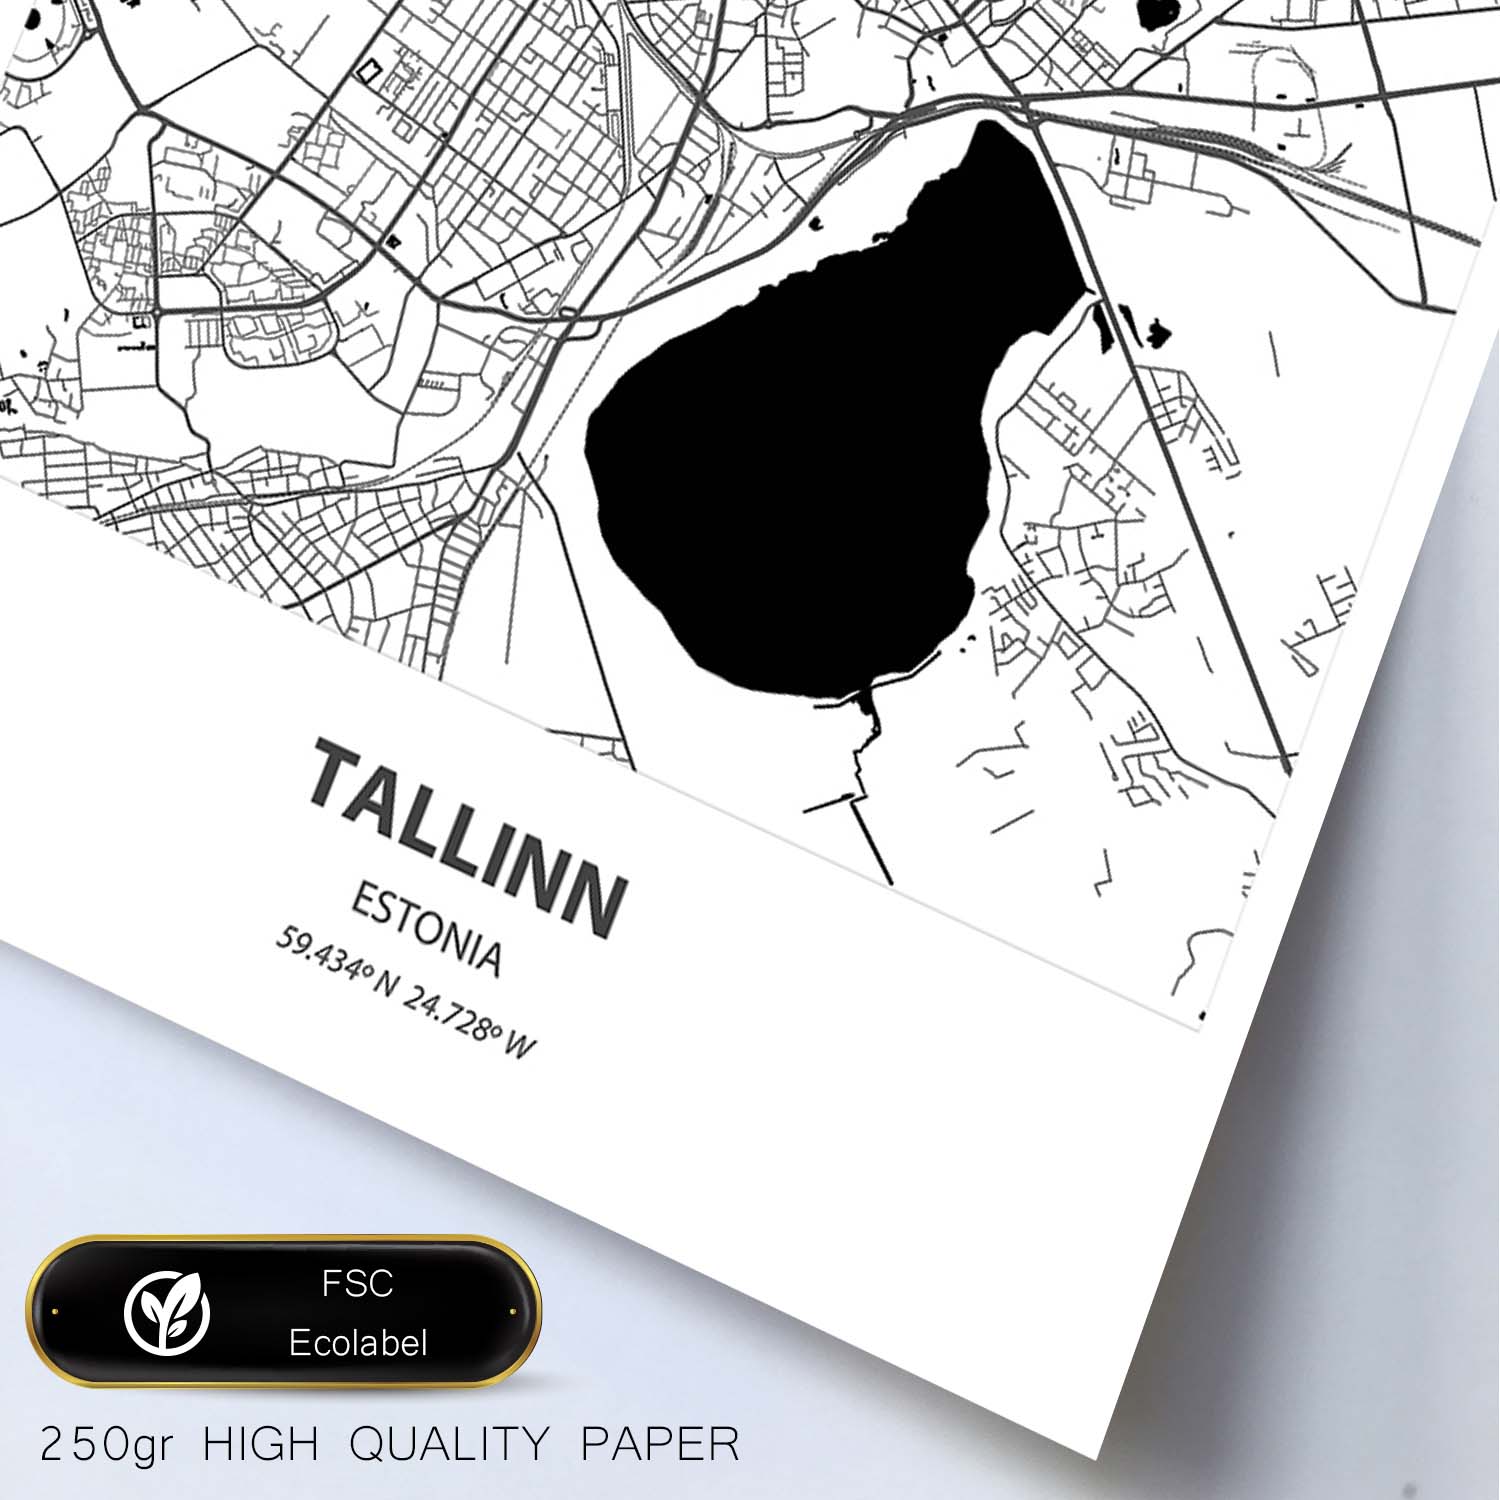 Poster con mapa de Tallinn - Estonia. Láminas de ciudades del norte de Europa con mares y ríos en color negro.-Artwork-Nacnic-Nacnic Estudio SL